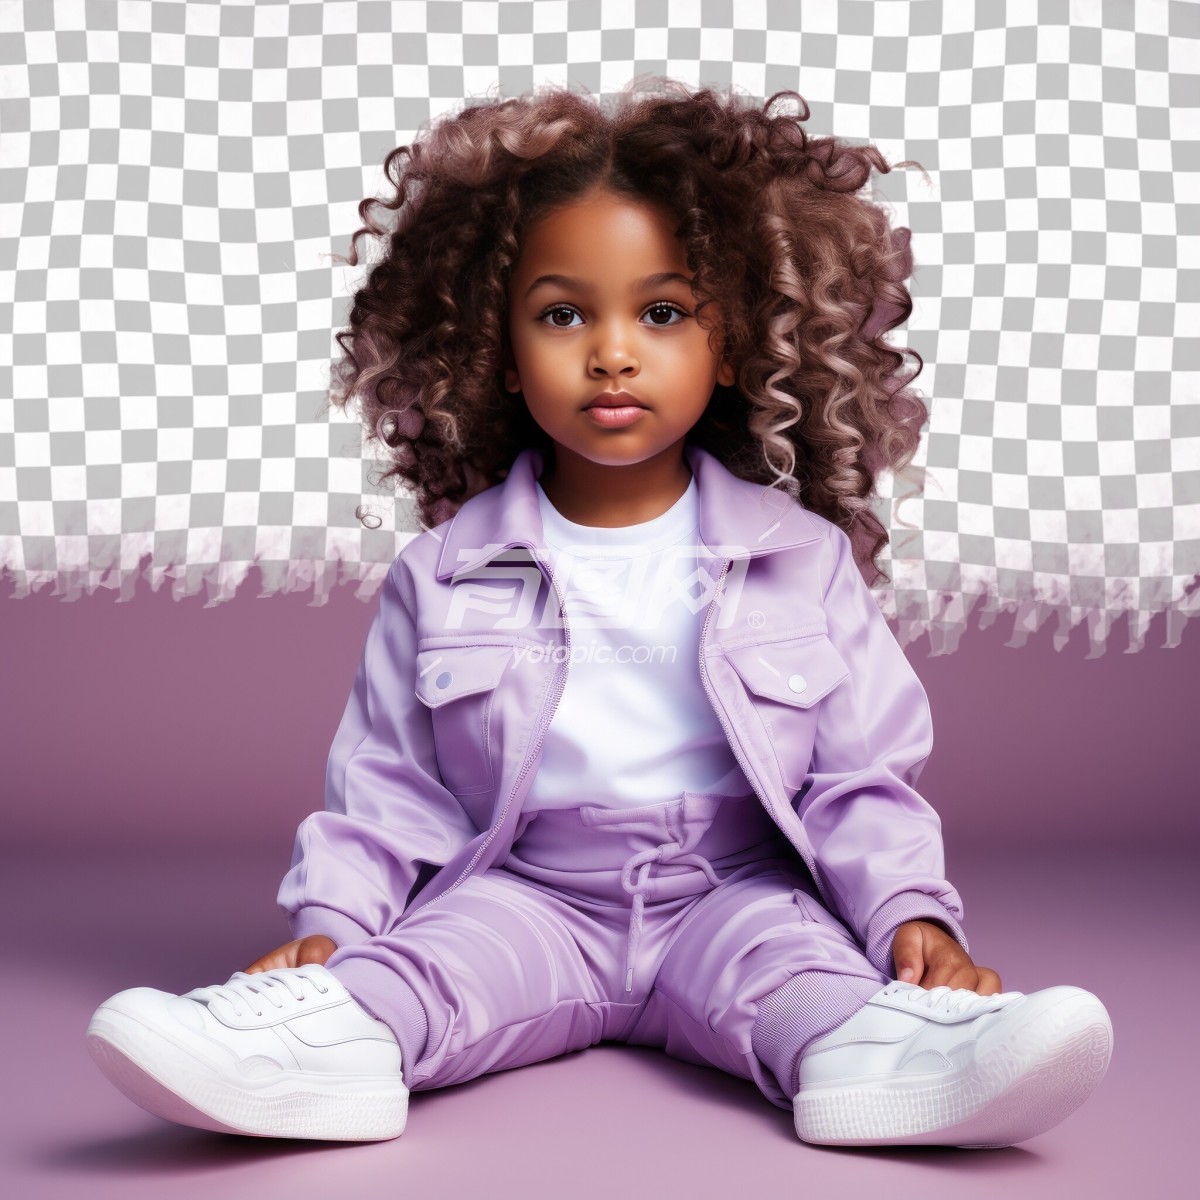 紫色休闲服装的小孩